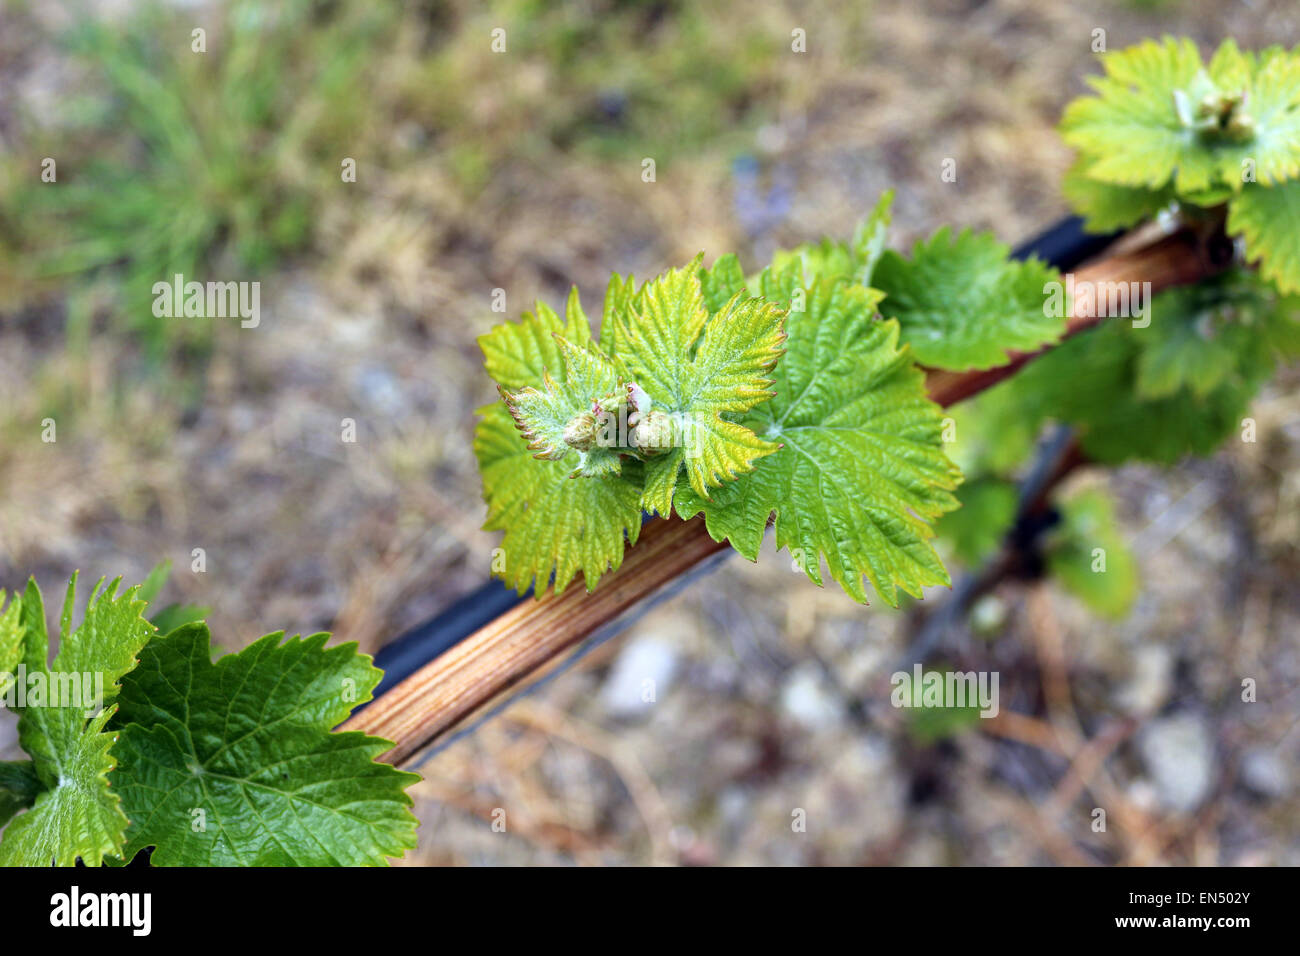 Les jeunes feuilles de vigne en Ligurie. Photographie par Qin Xie. Banque D'Images